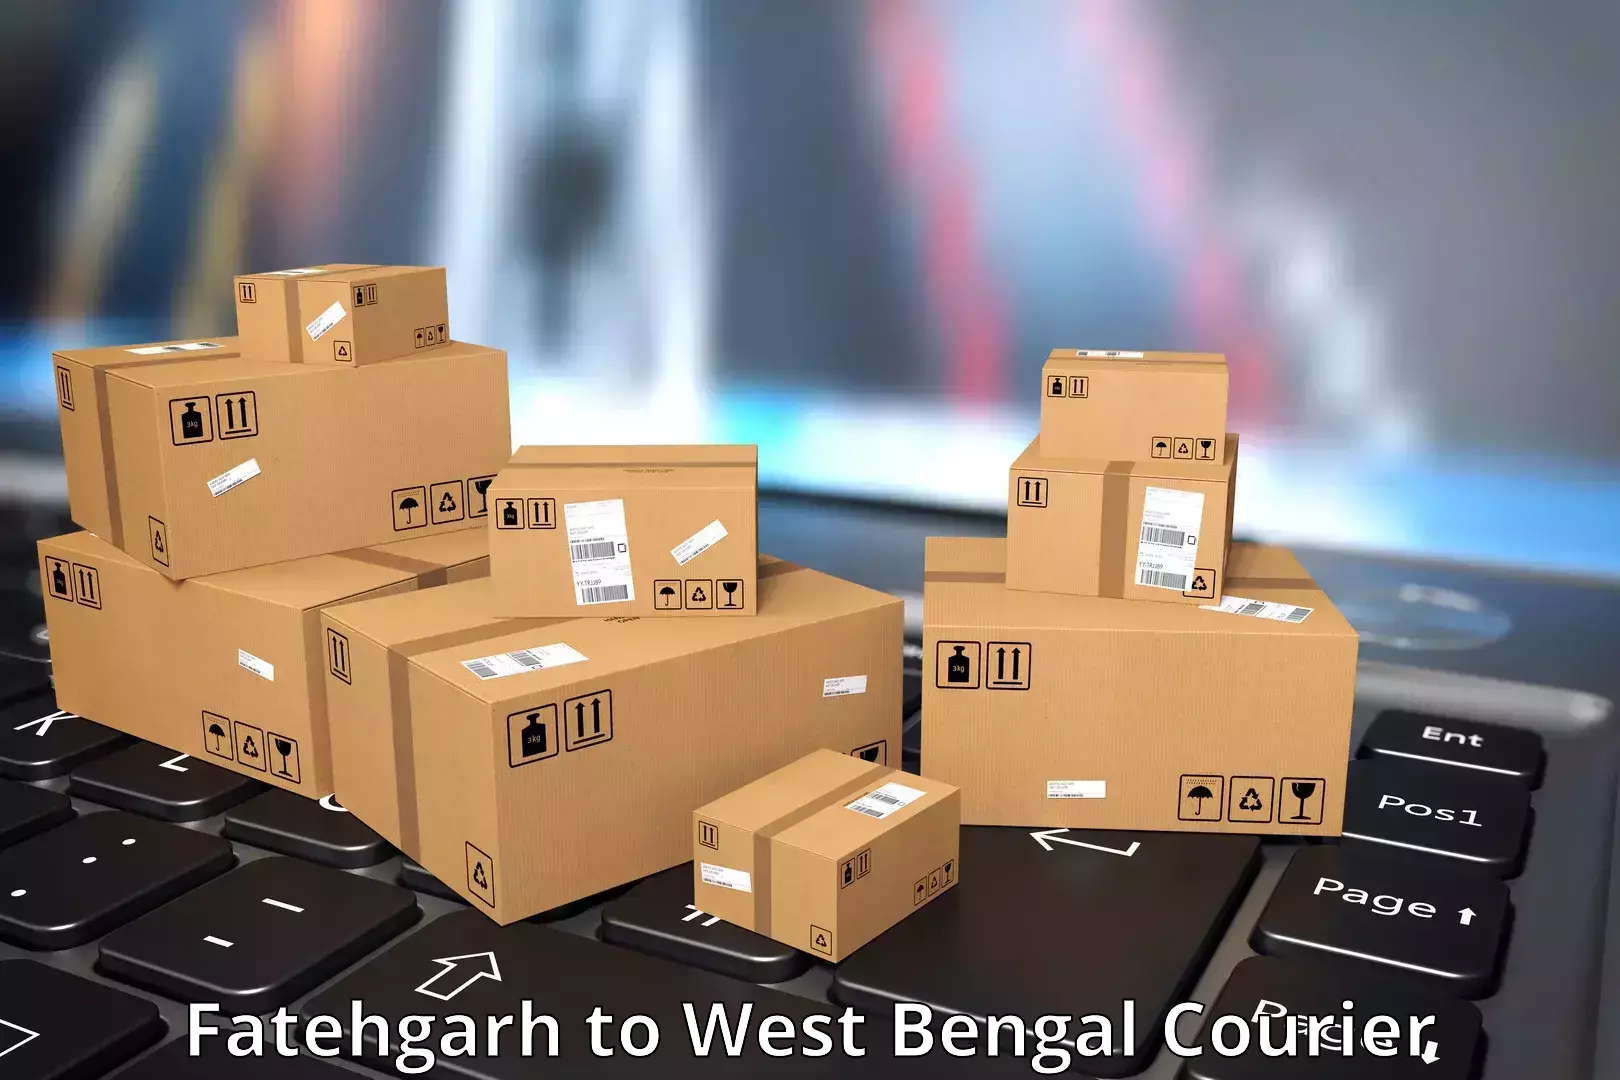 International courier networks Fatehgarh to Belda